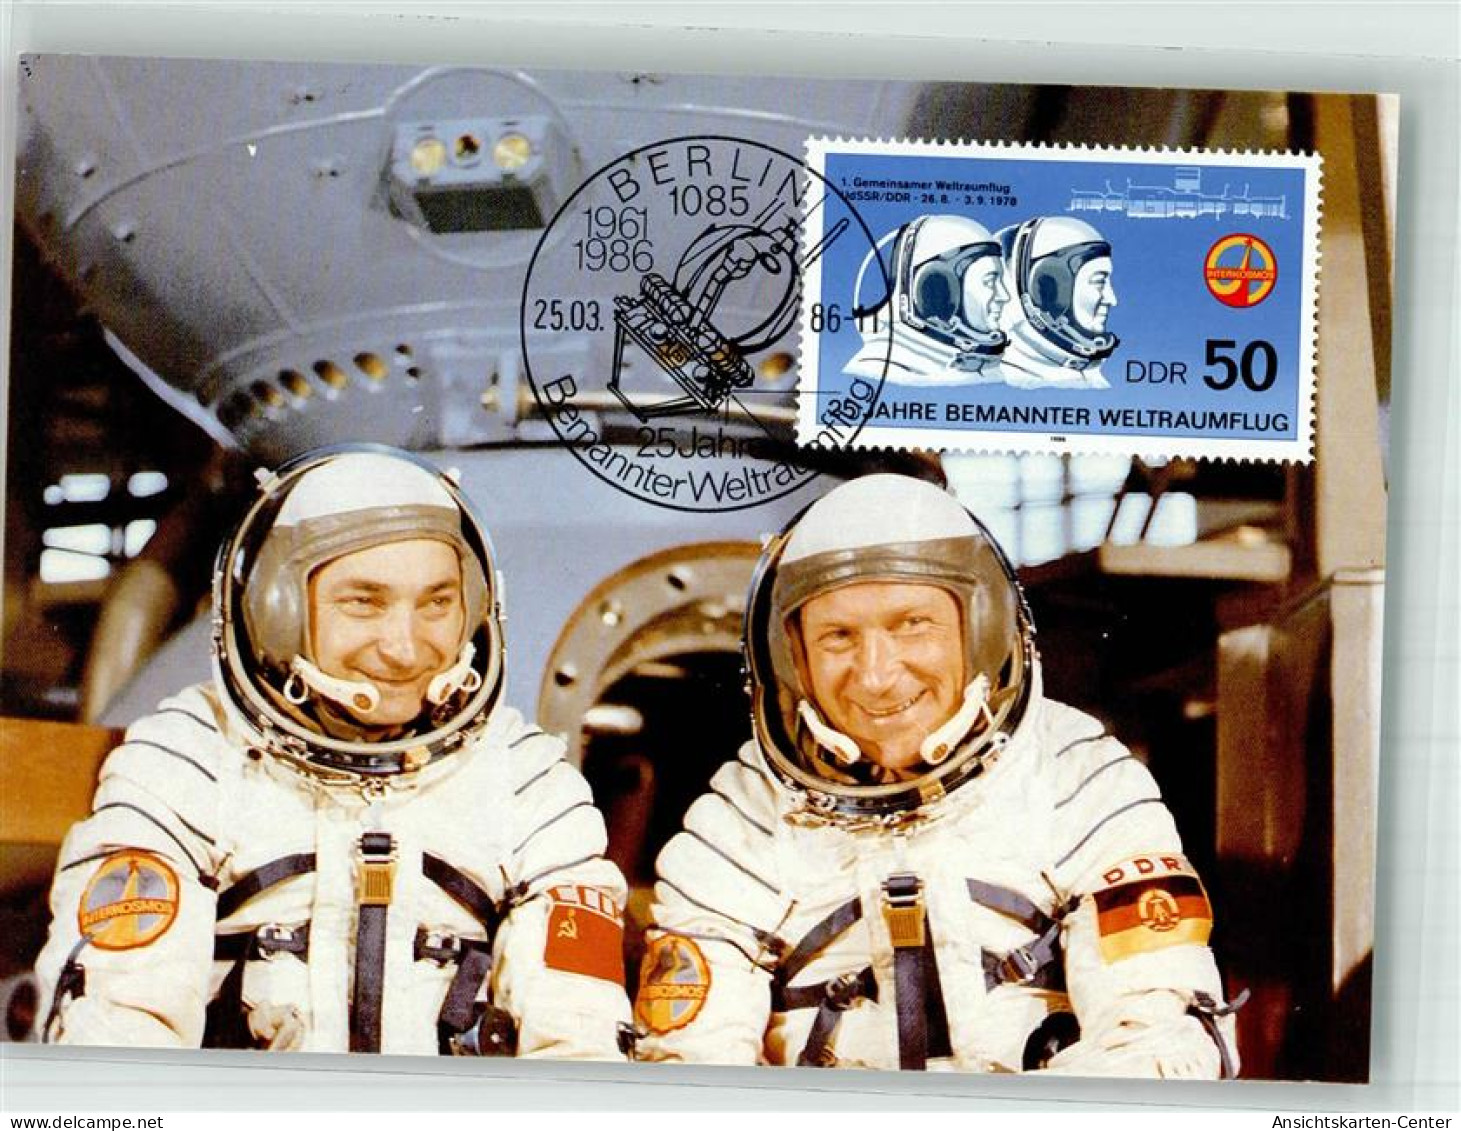 39867307 - Astronauten Waleri Bykowski Und Sigmund Jaehn 1 Gemeinsamer Weltraumflug 1978 Sondermarke Sonderstempel - Spazio